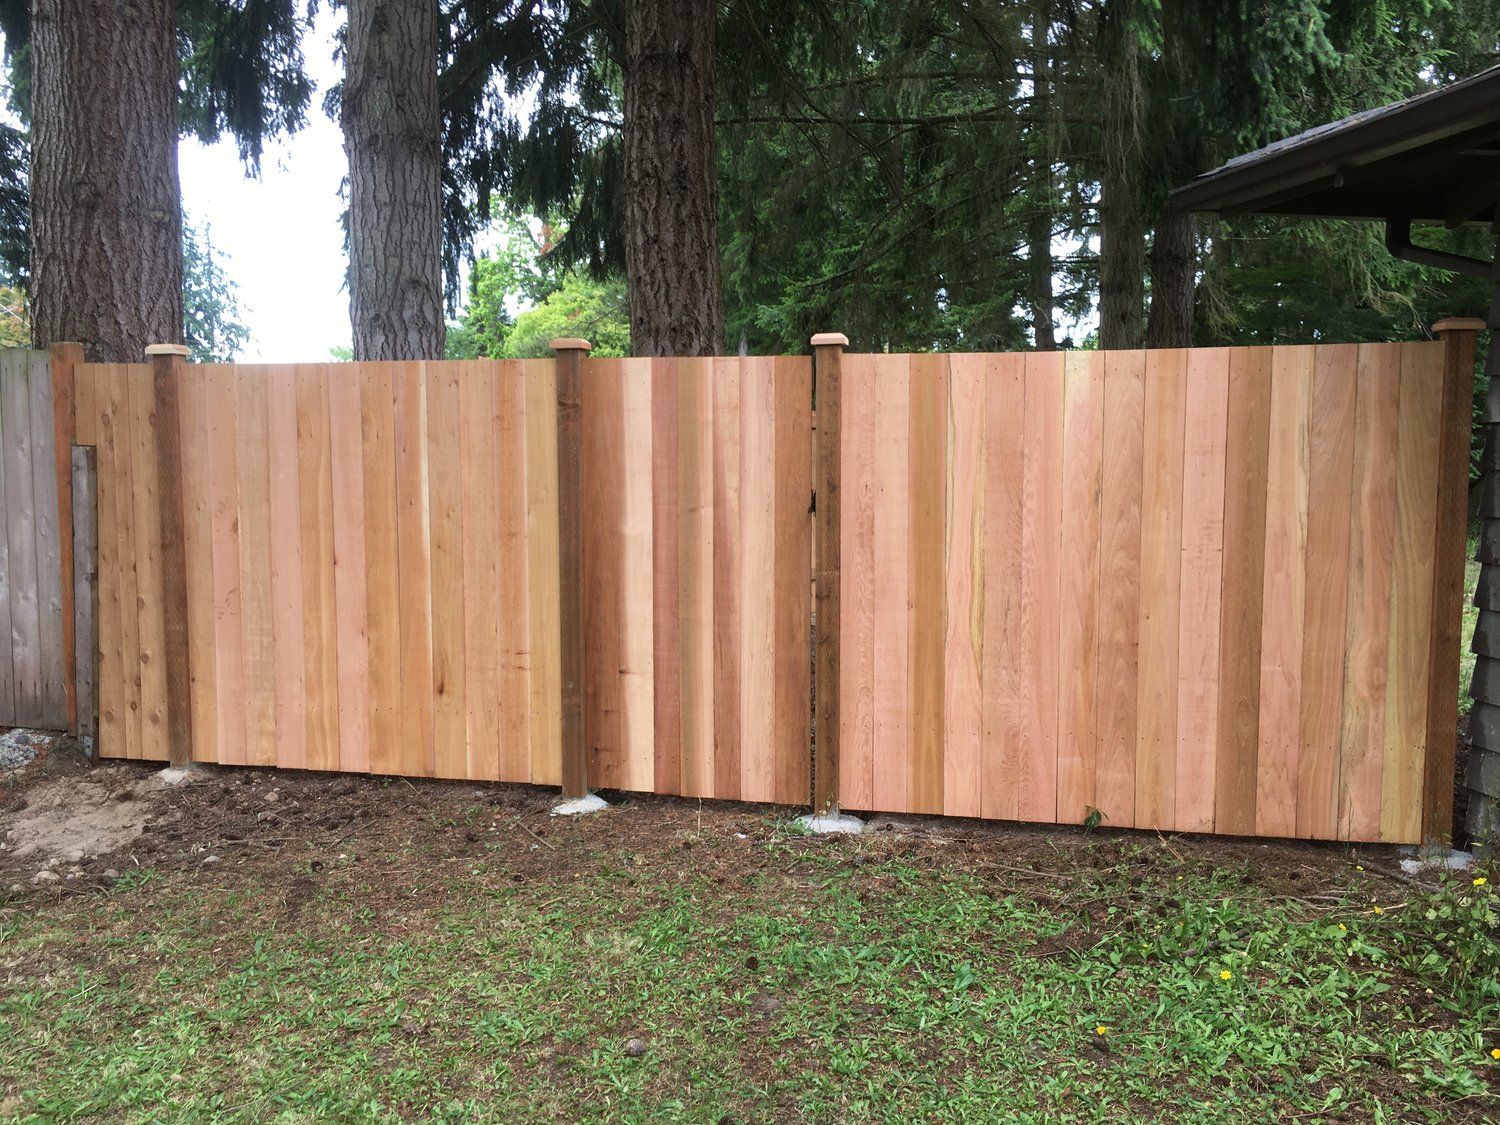 Cedar wood estate style fence in yard